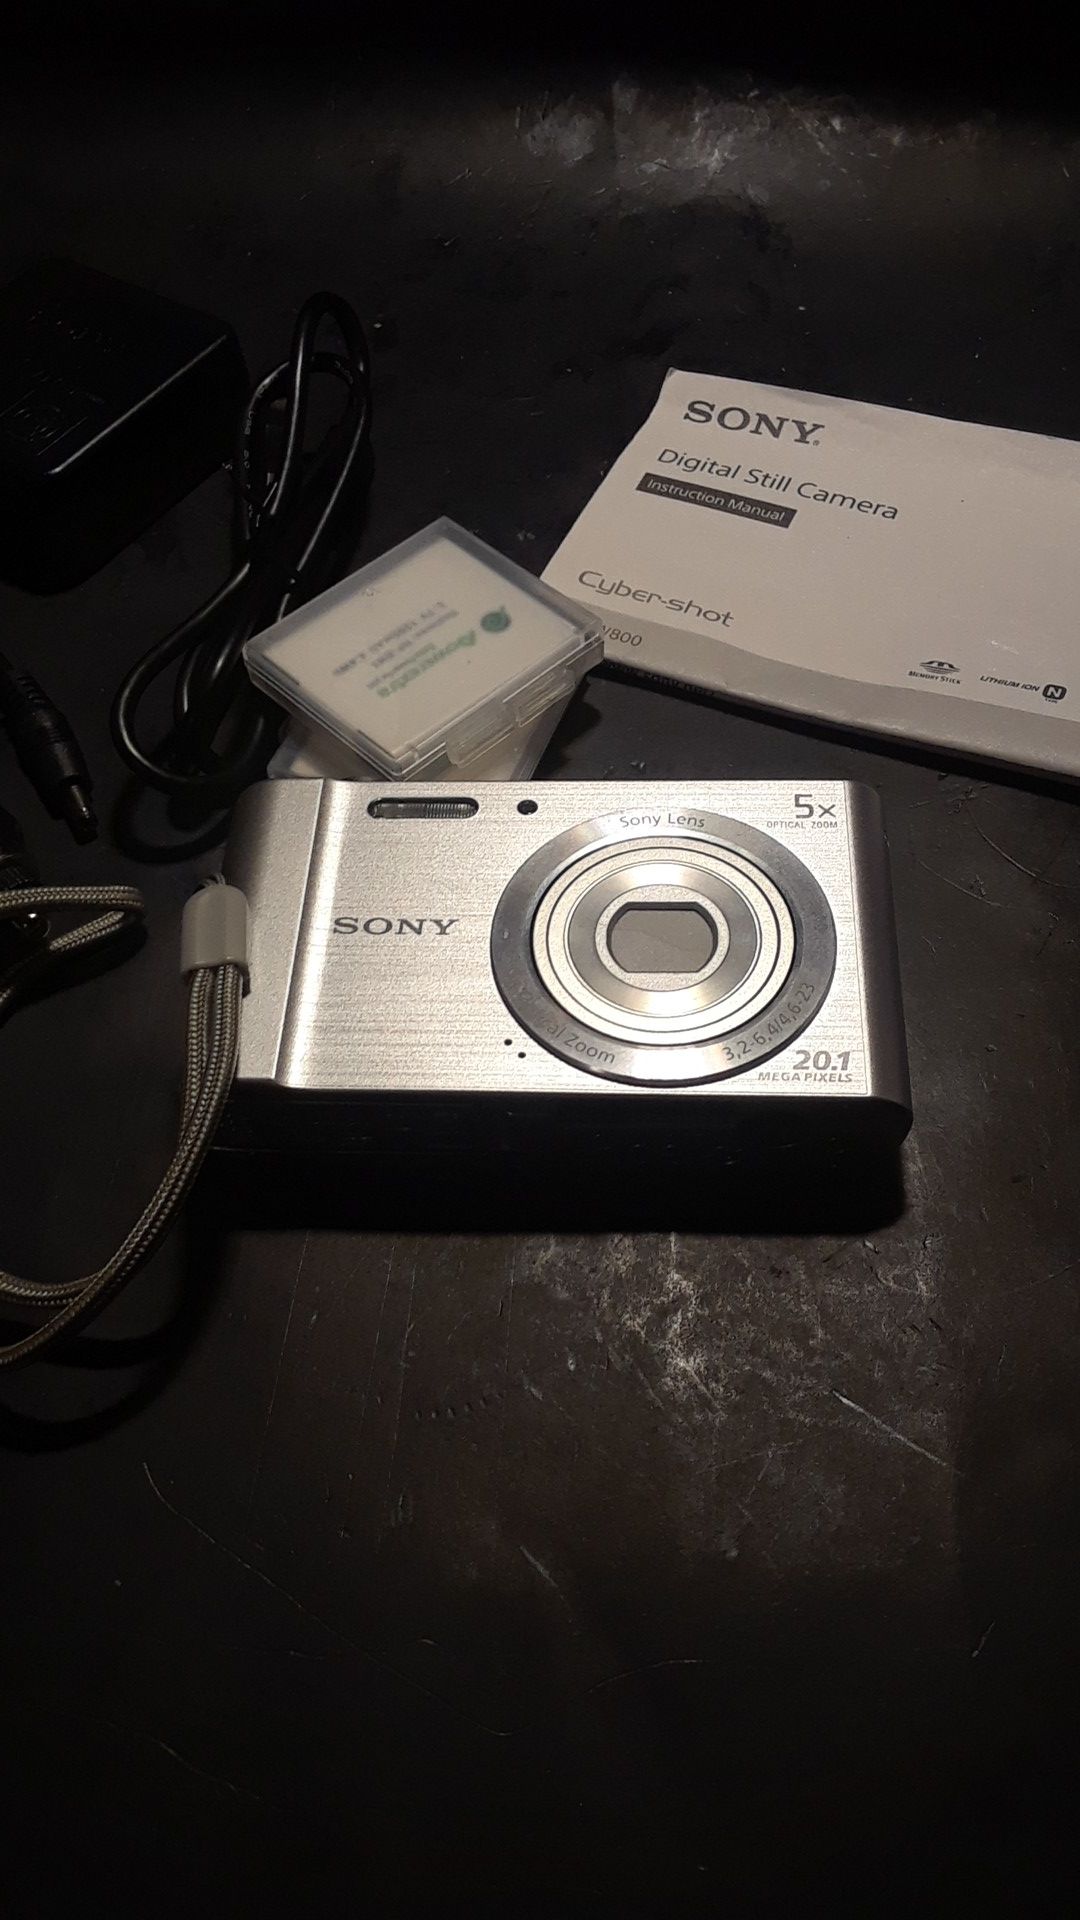 Sony CYBER SHOT DSC-W800